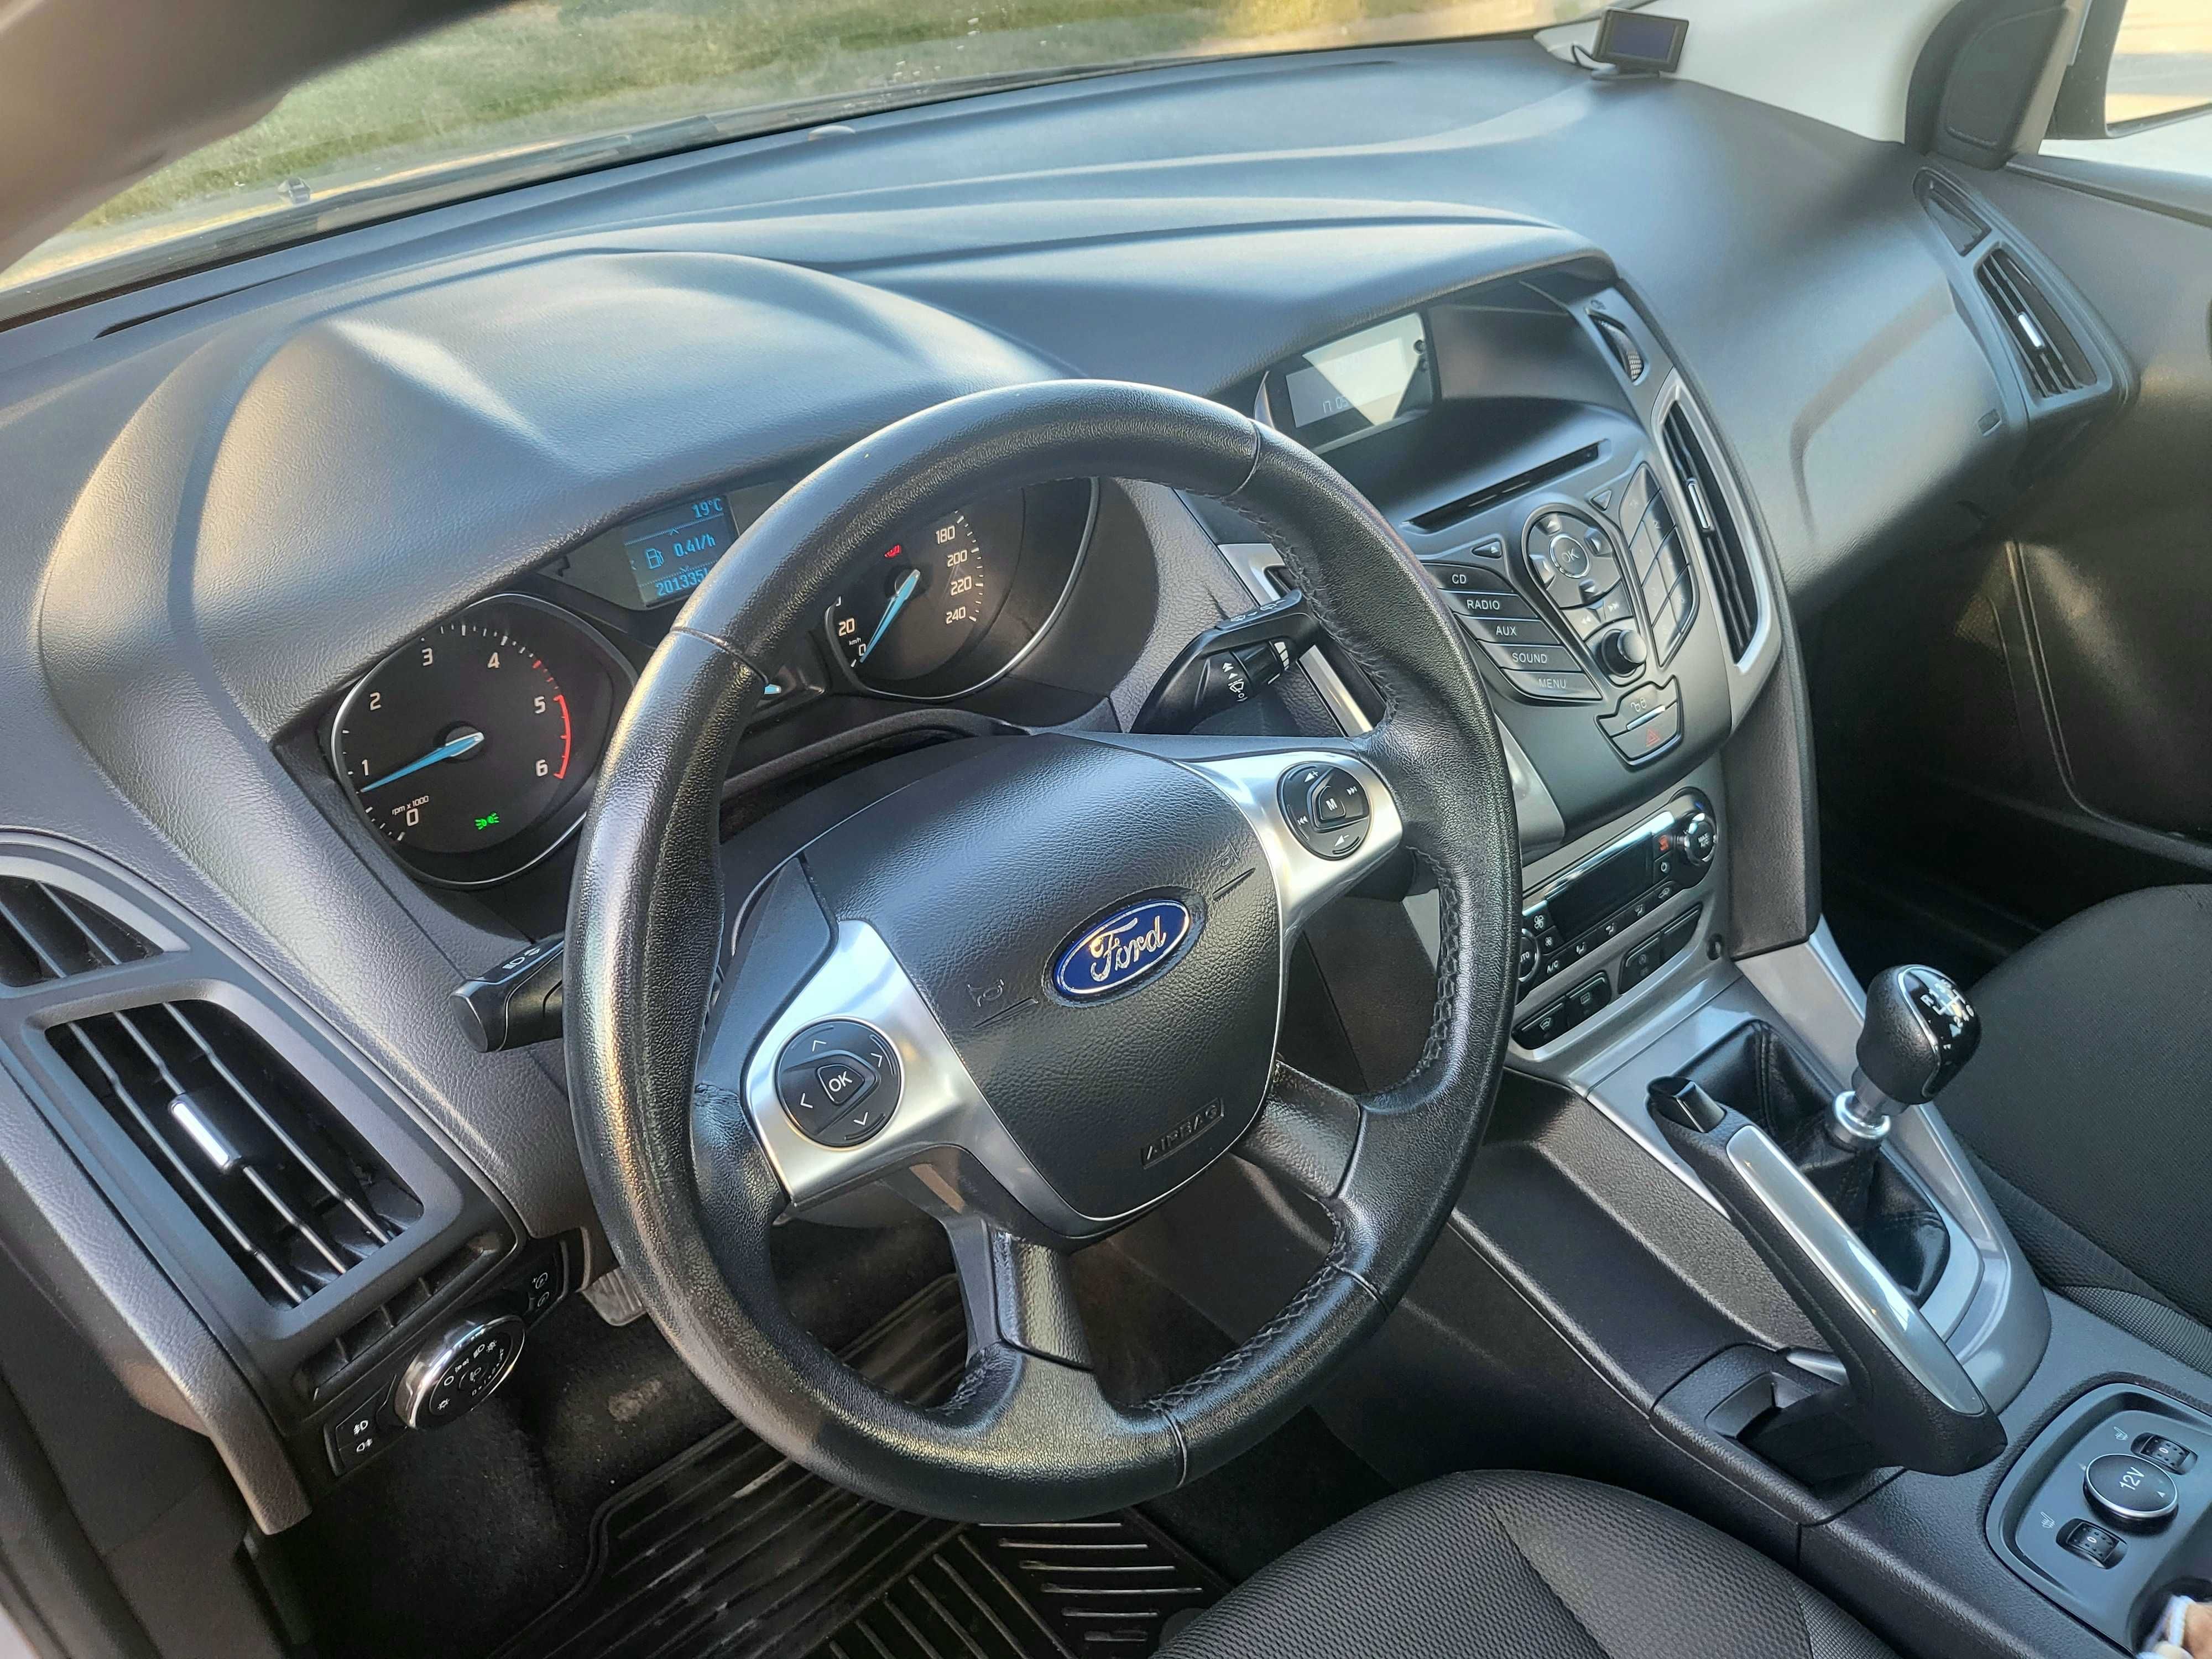 Ford Focus 1.6 TDCi 115 KM bez wkładu, polski salon